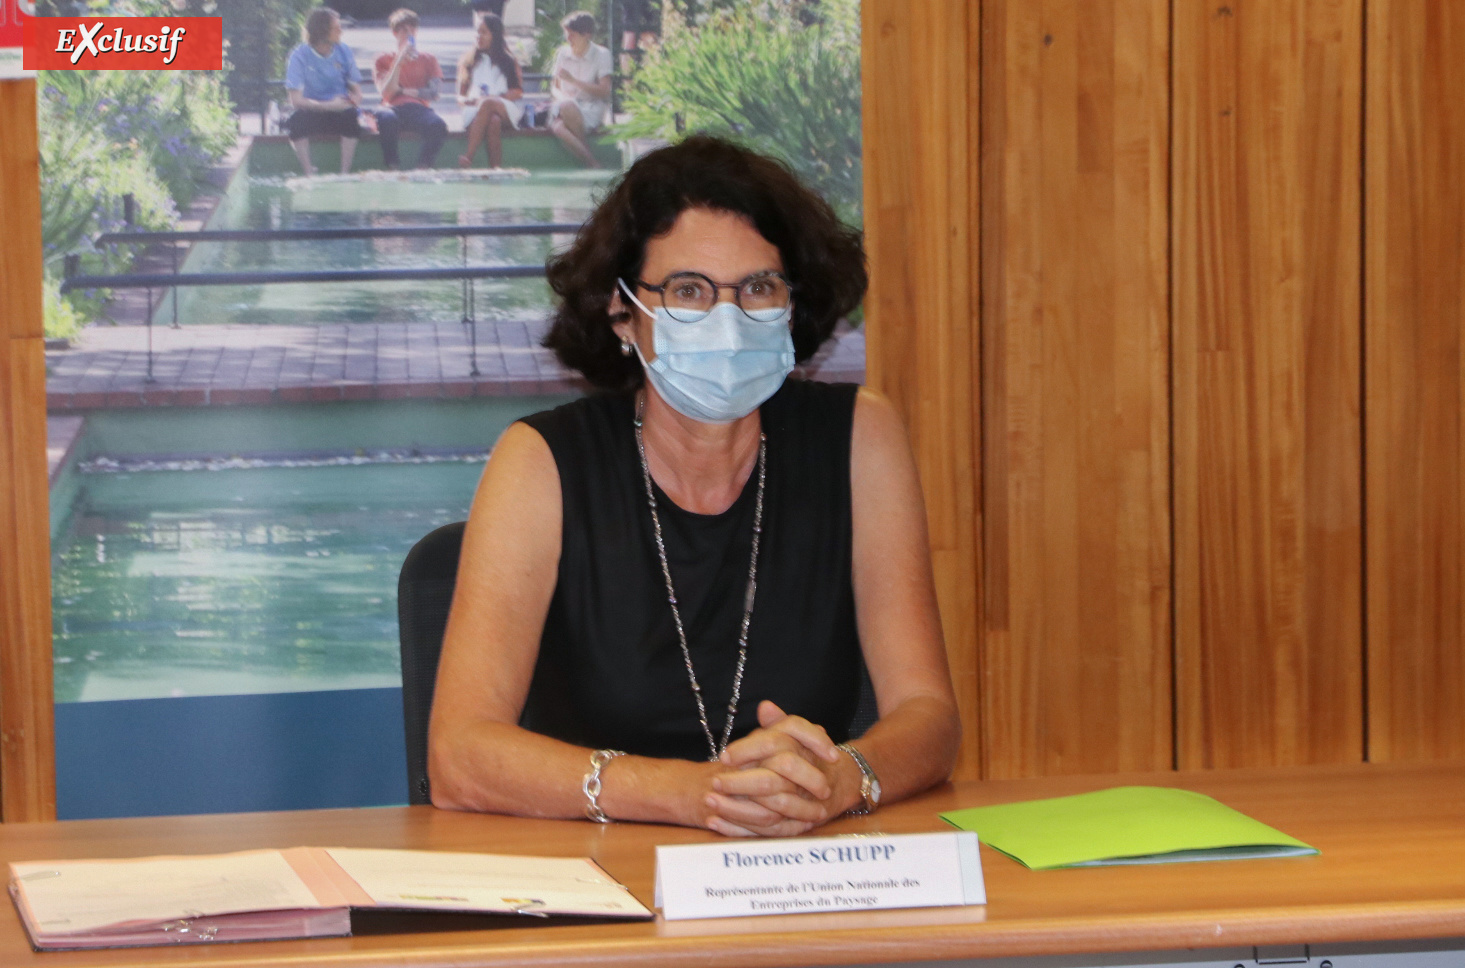 Florence Schupp, représentante de l’Union Nationale des Entreprises du Paysage (UNEP) à La Réunion